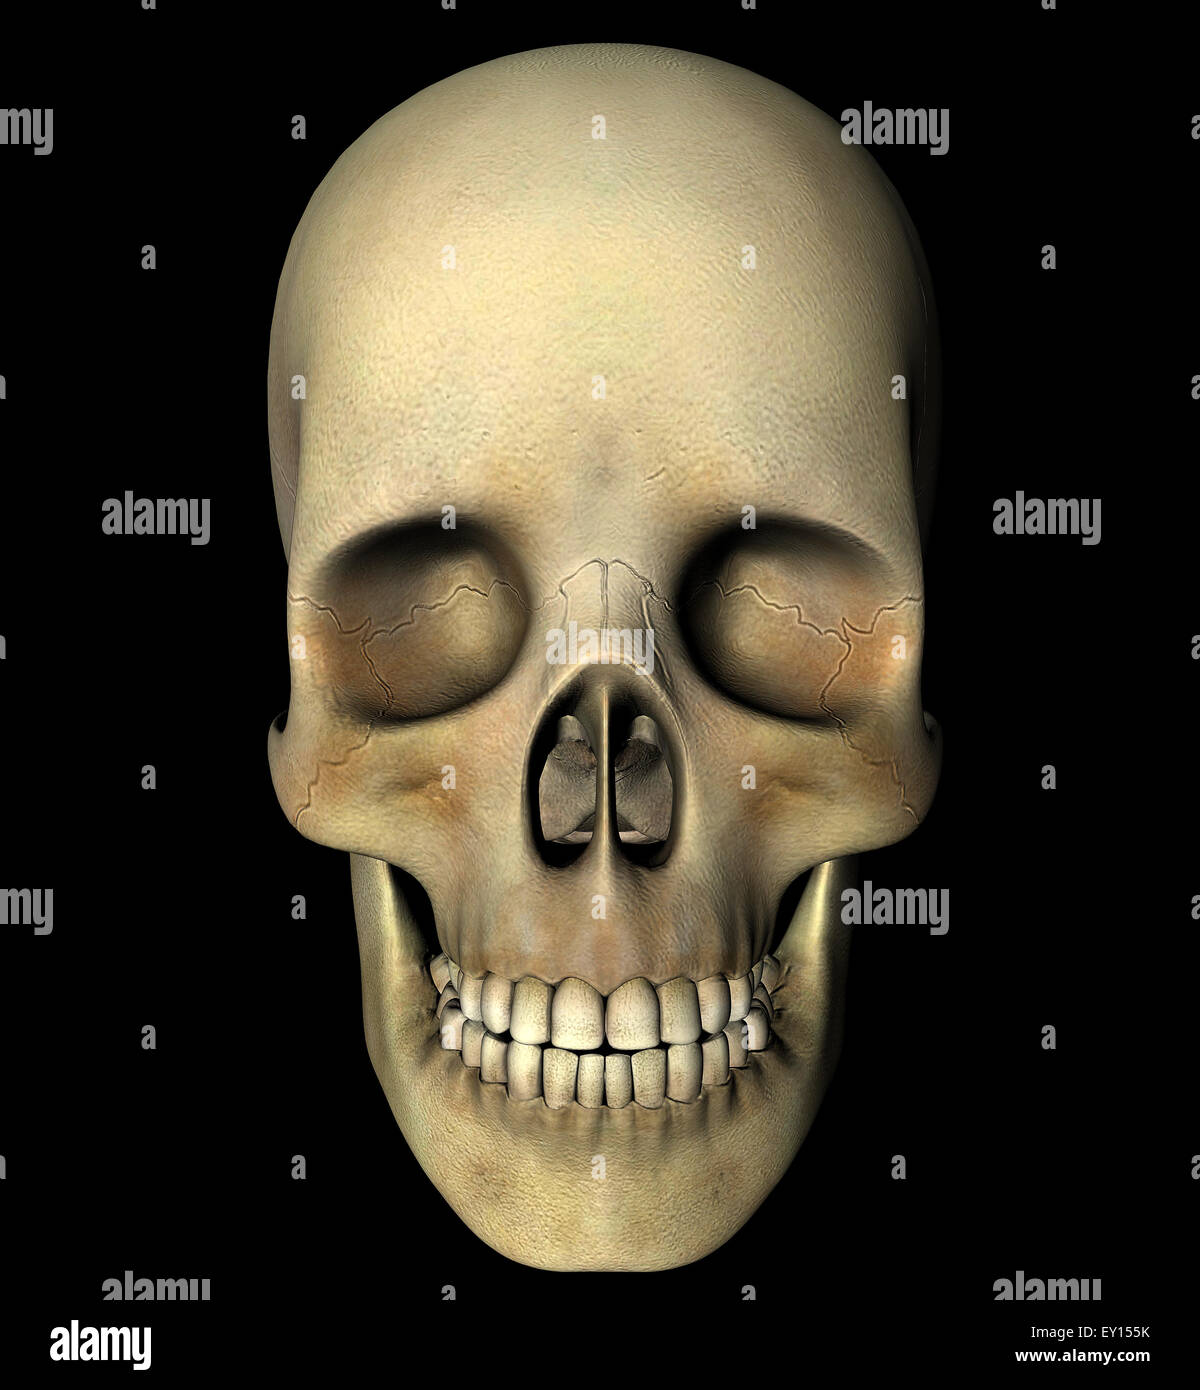 Crâne humain 3D, Vue de face. Illustration numérique, chemin de détourage inclus. Banque D'Images